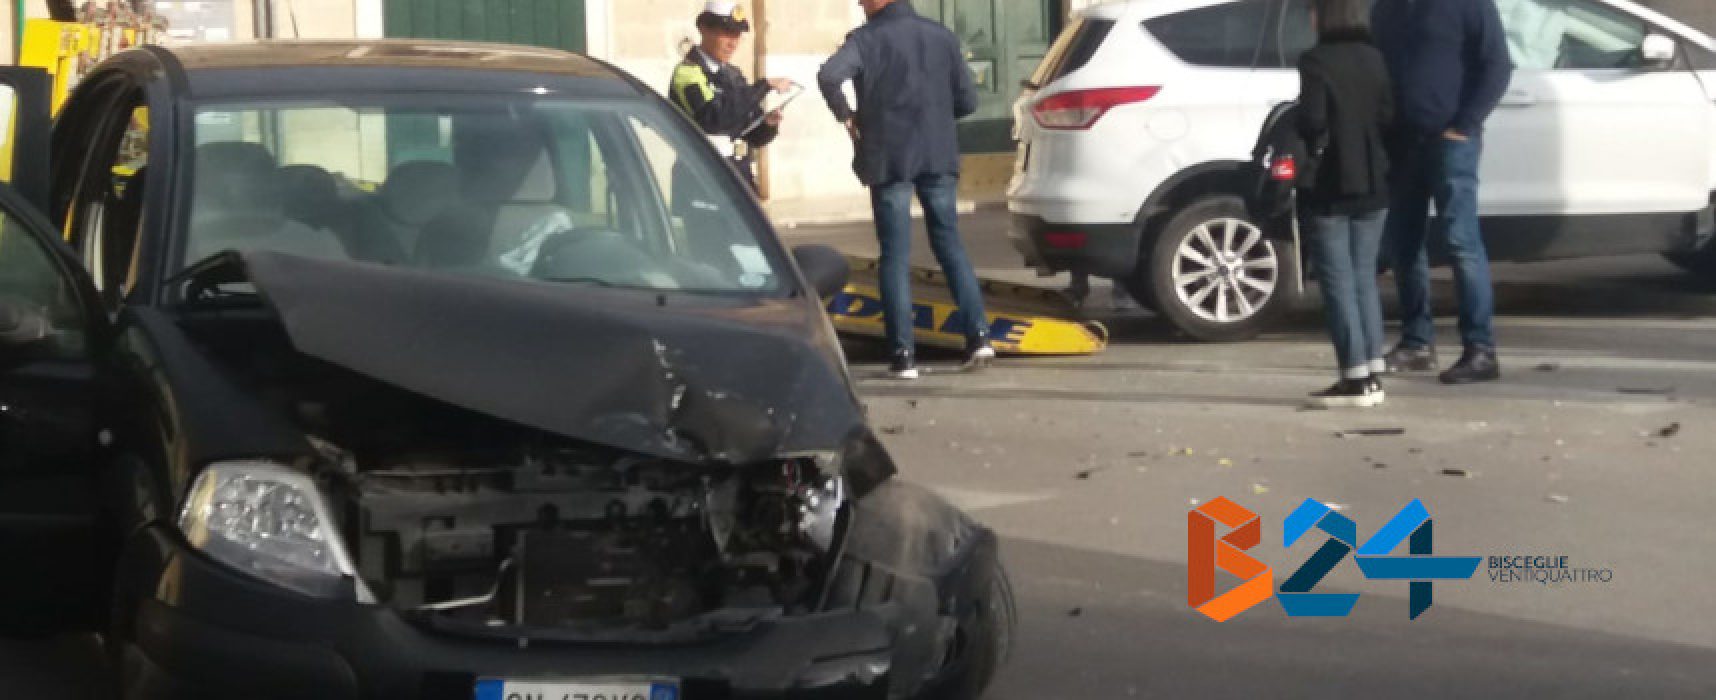 Incidente su Corso Sergio Cosmai, tre feriti